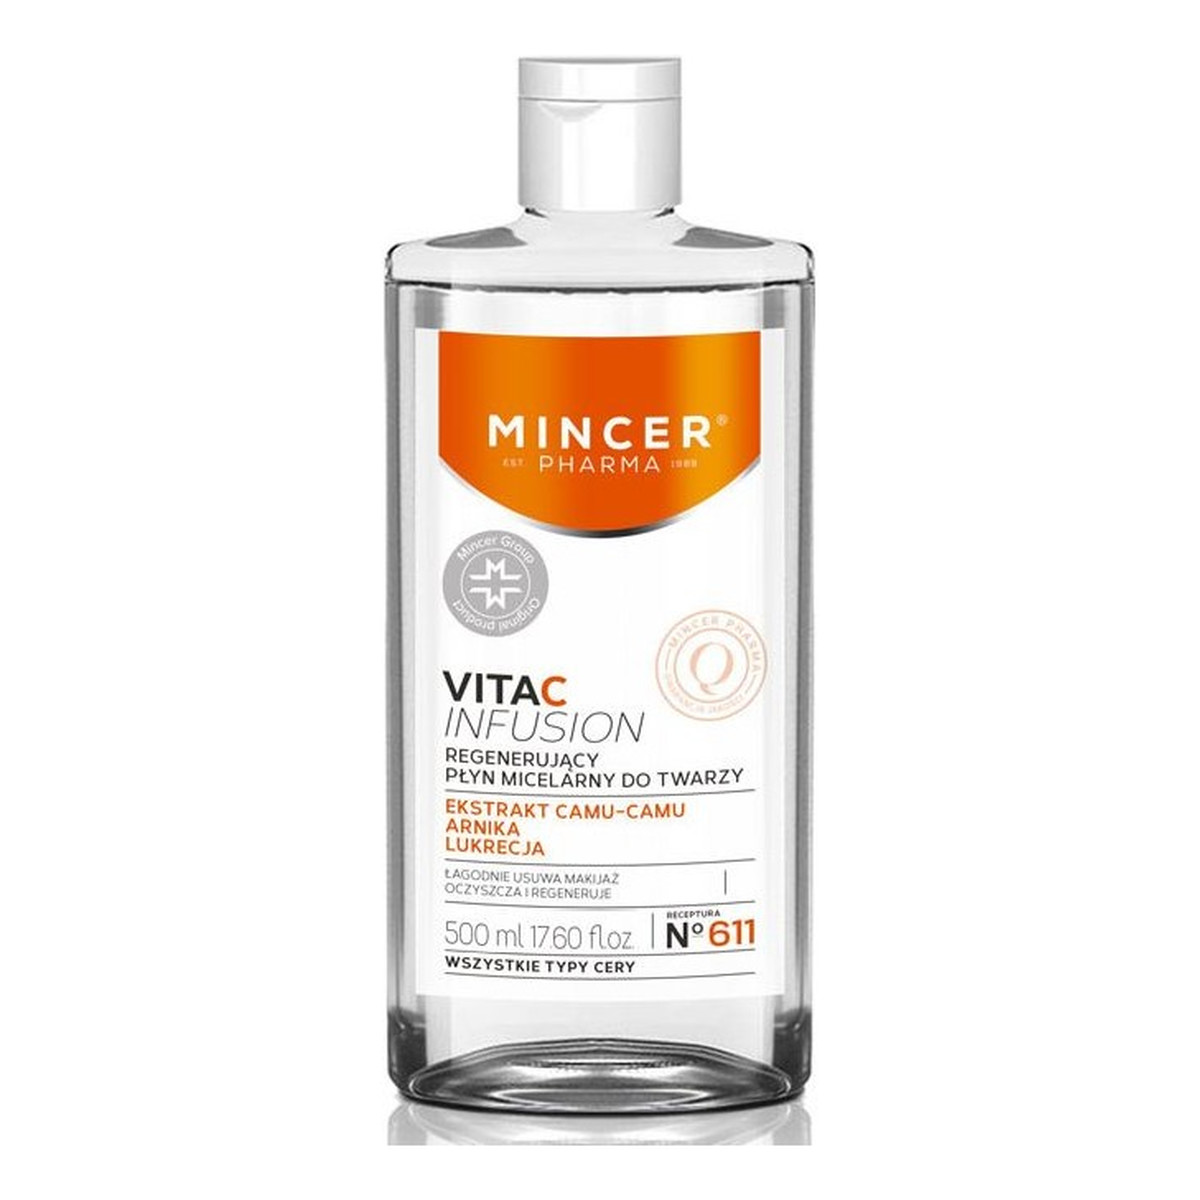 Mincer Pharma Vita C Infusion Regenerujący płyn micelarny do twarzy No 611 500ml